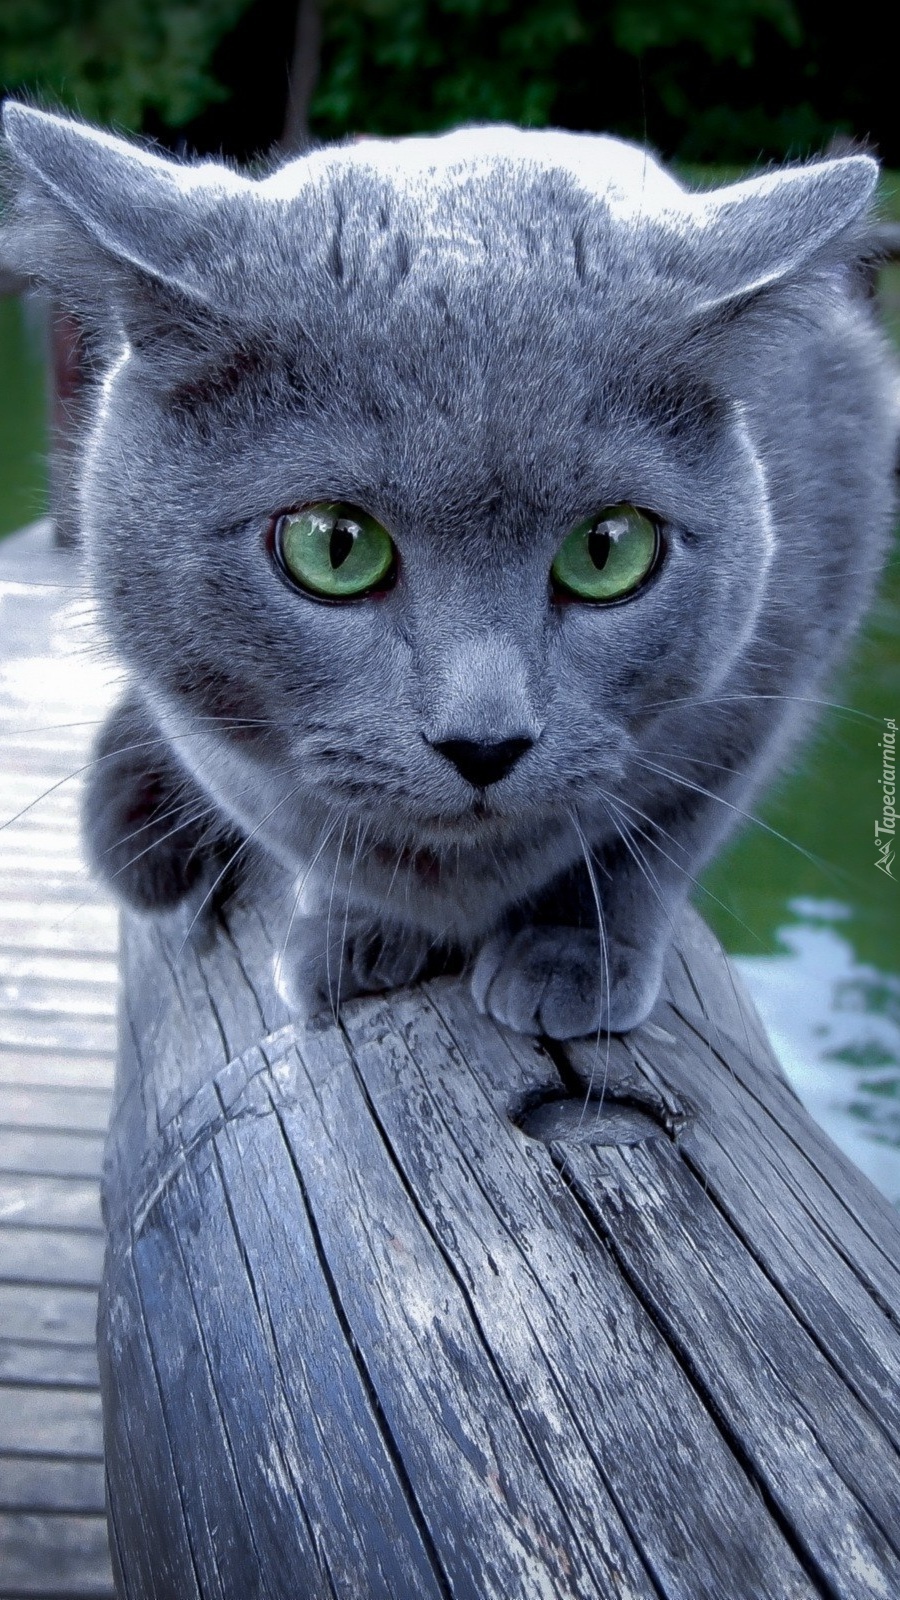 Kot brytyjski na drewnianym moście